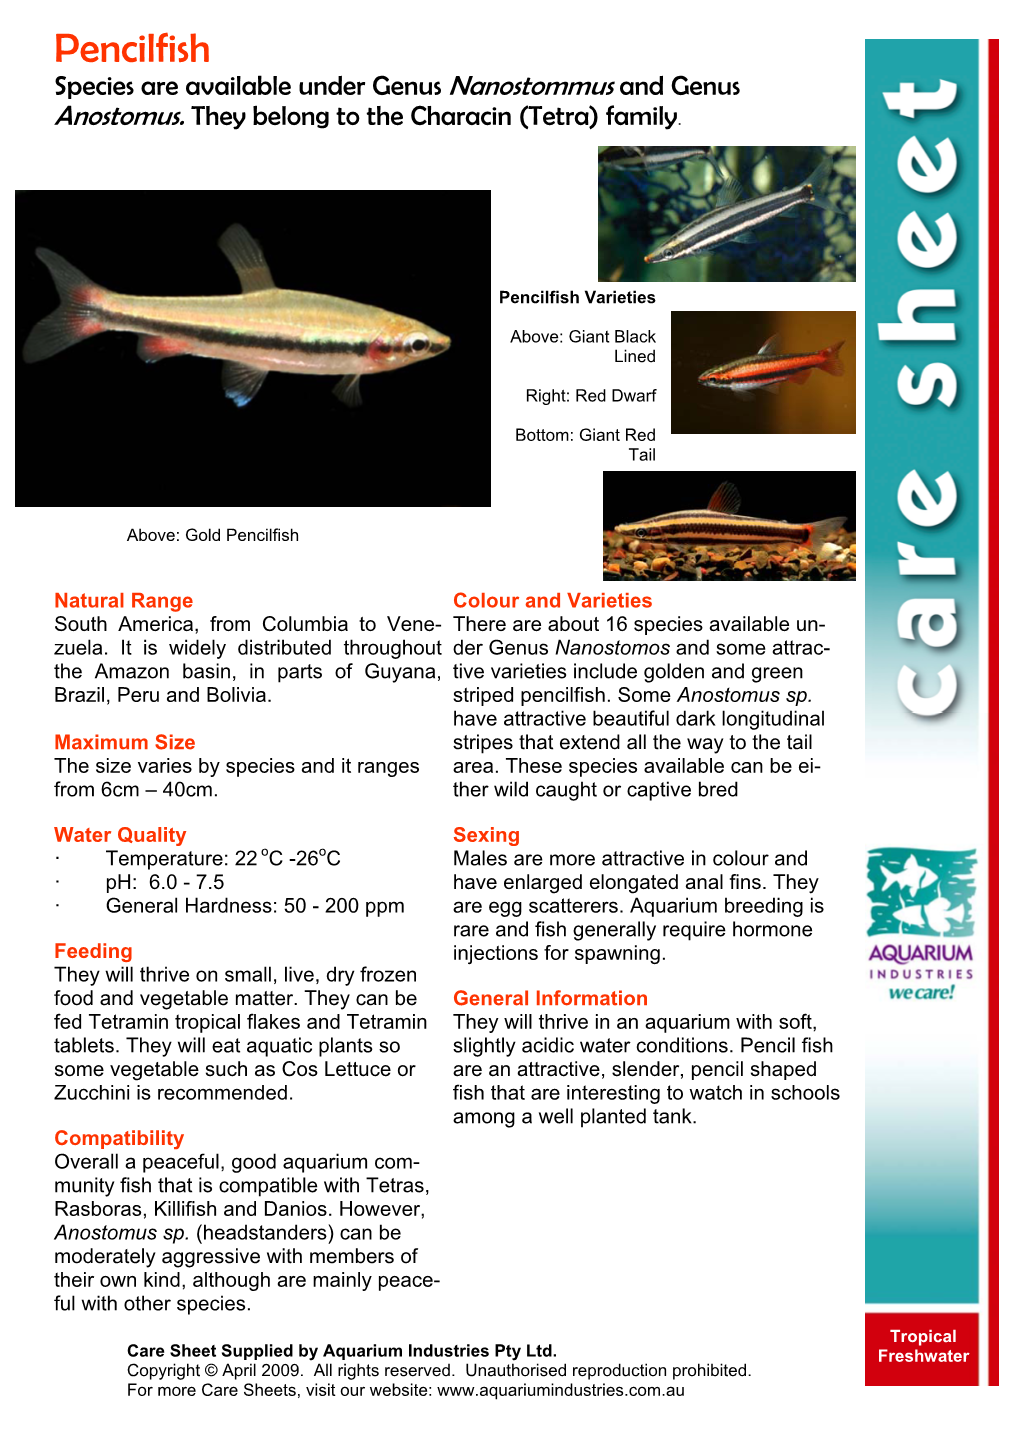 Pencilfish Species Are Available Under Genus Nanostommus and Genus Anostomus